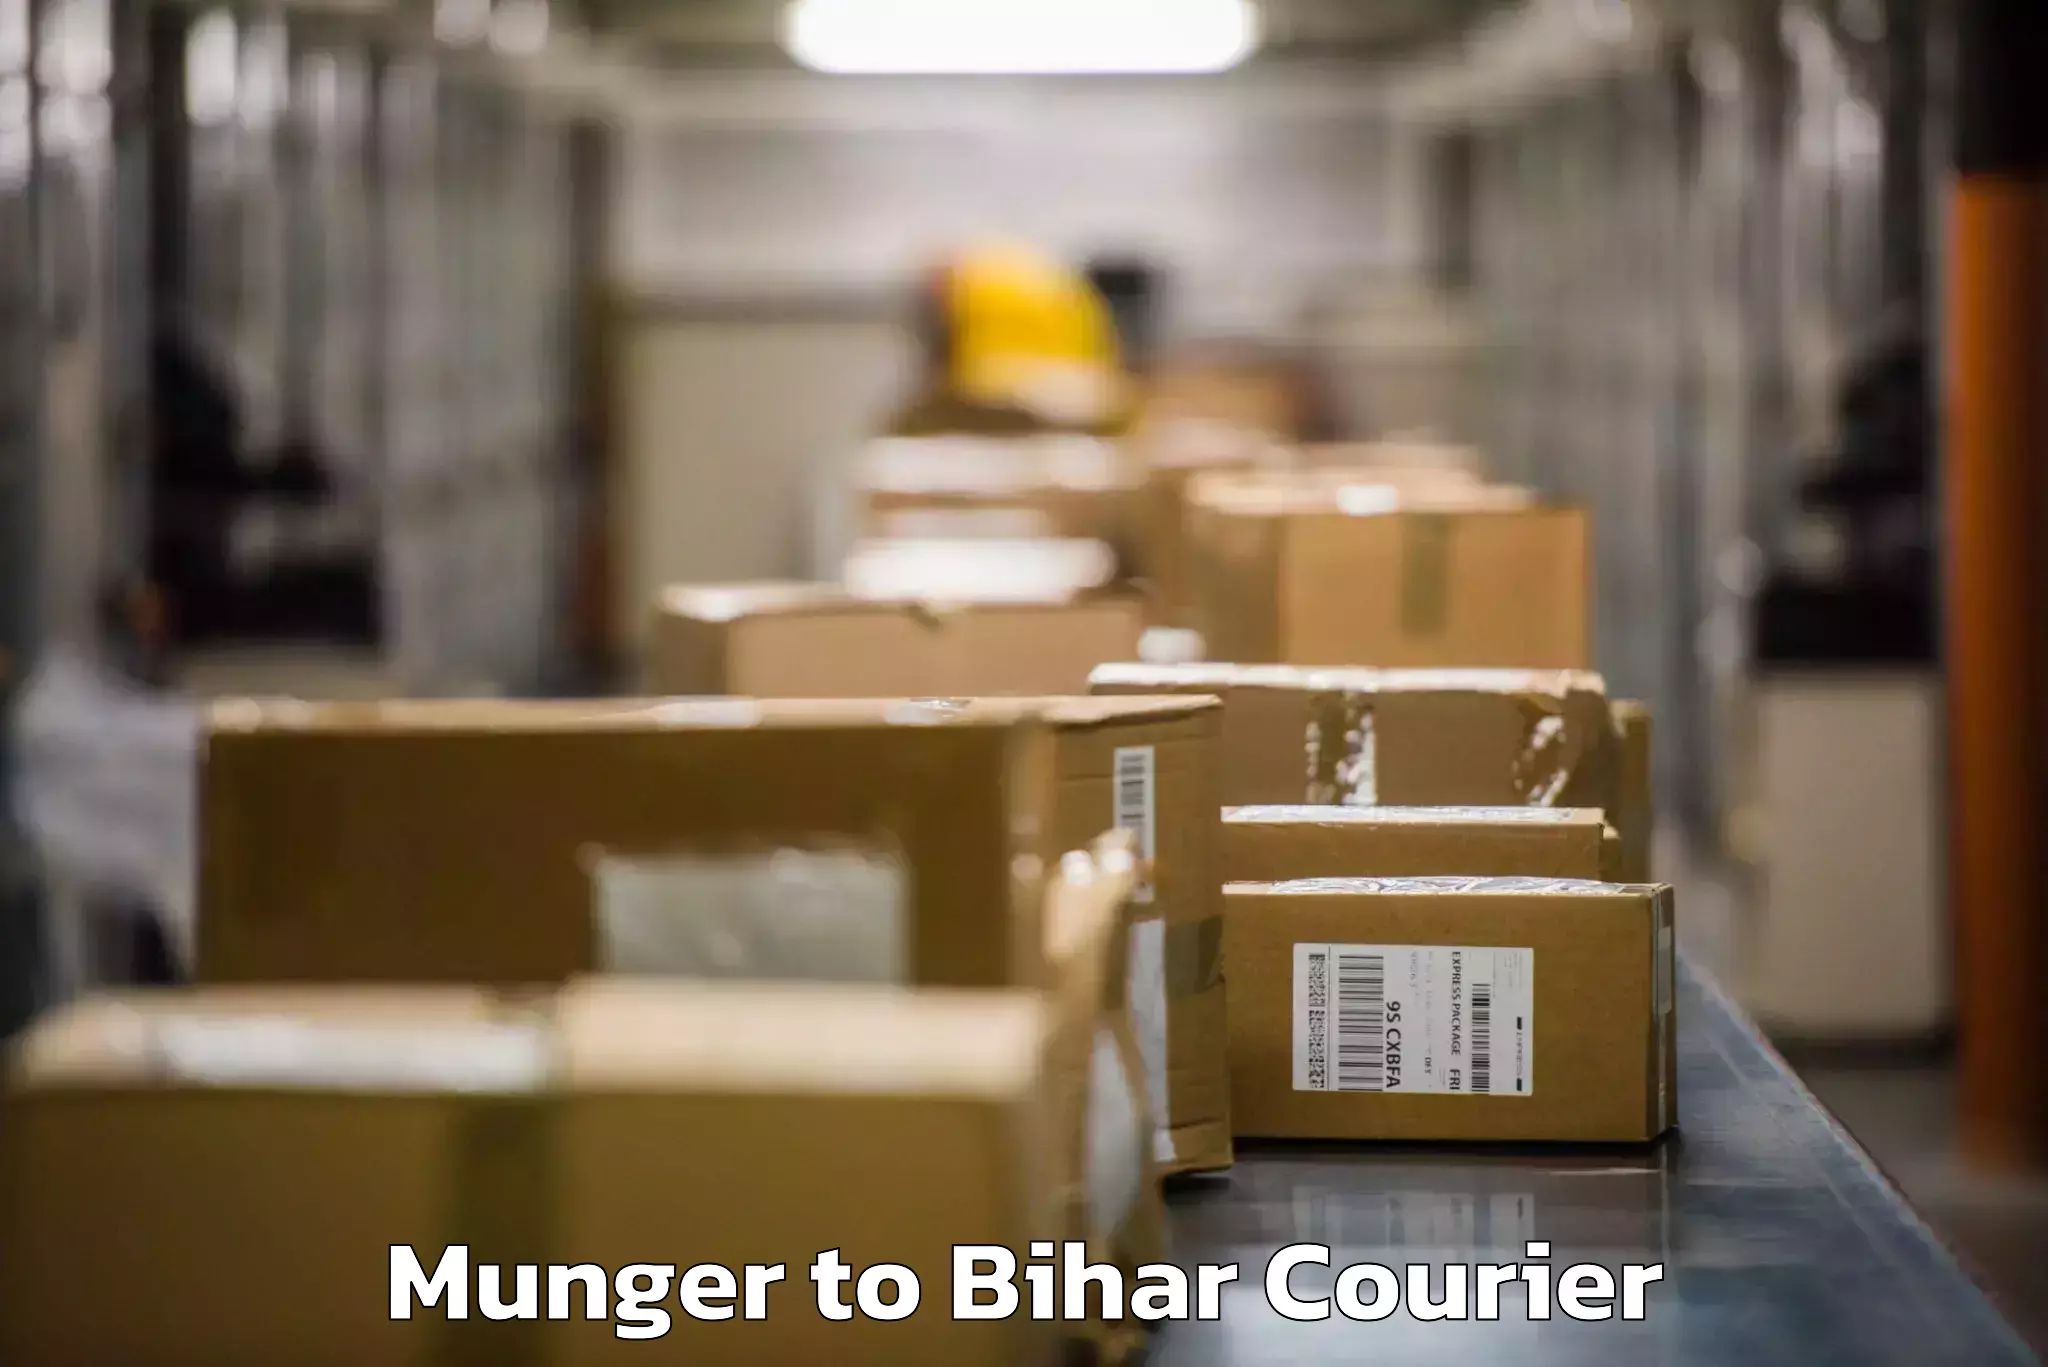 Baggage shipping experts Munger to Kochas